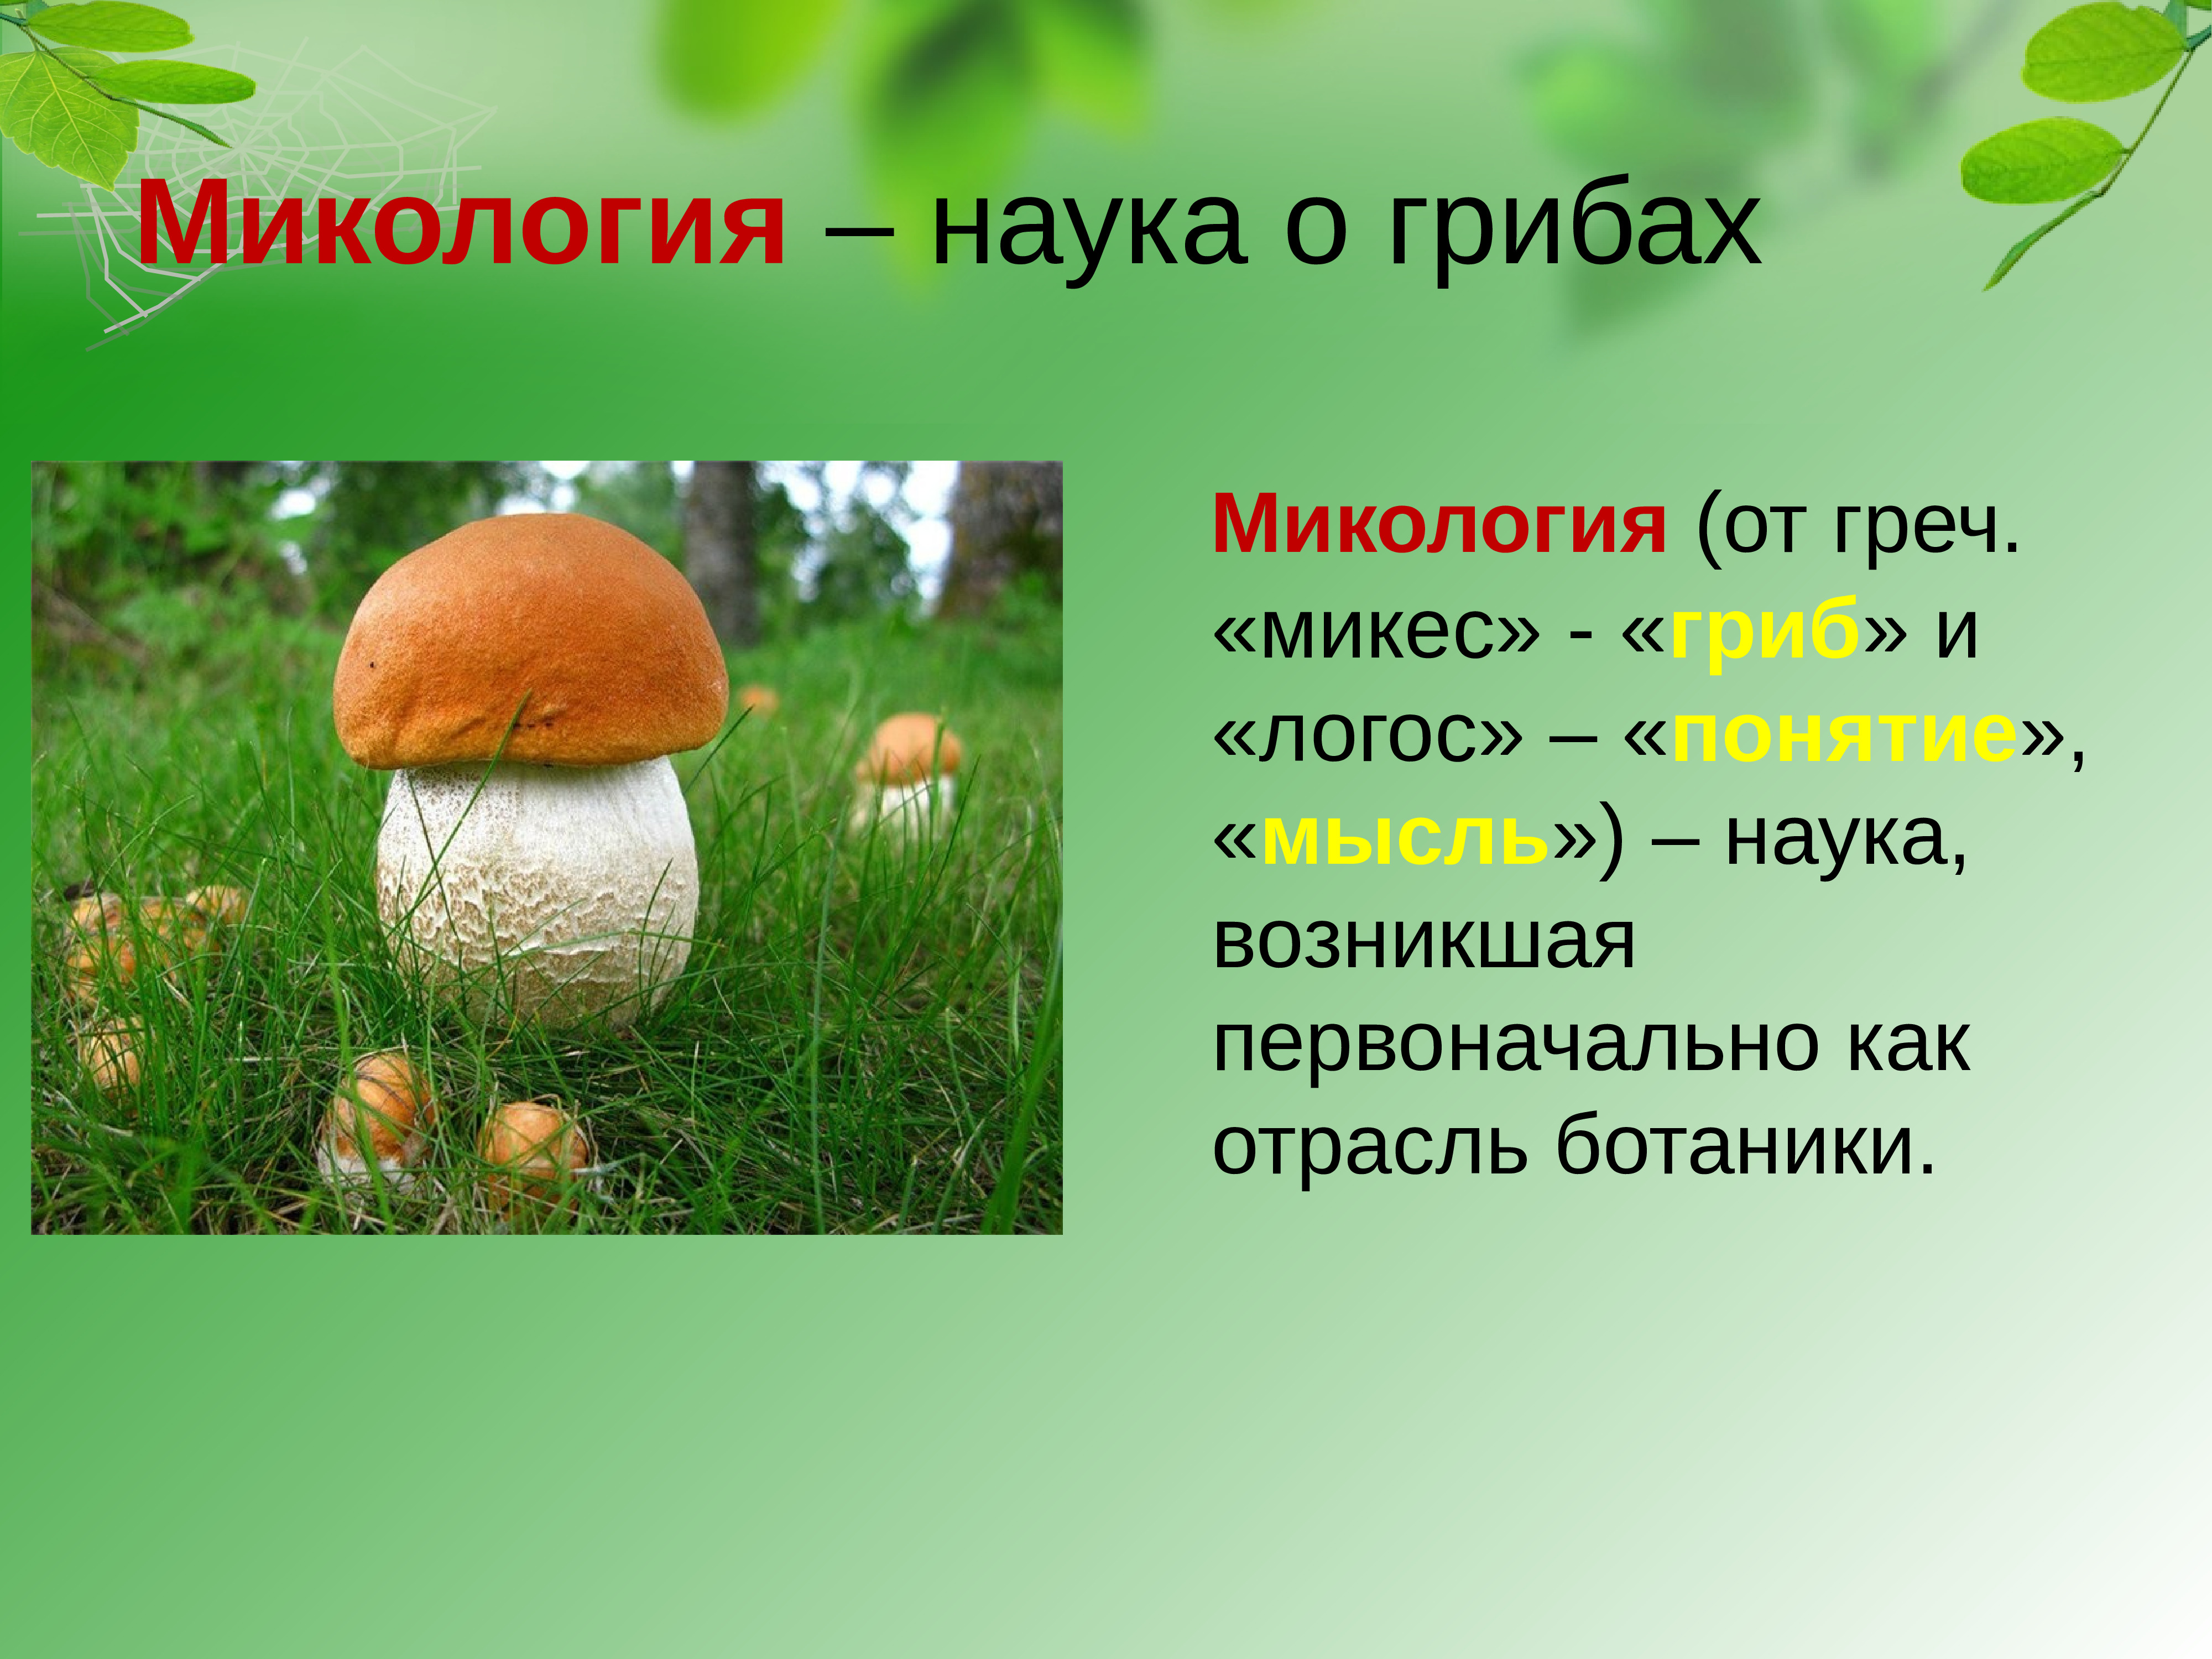 Наука про грибы